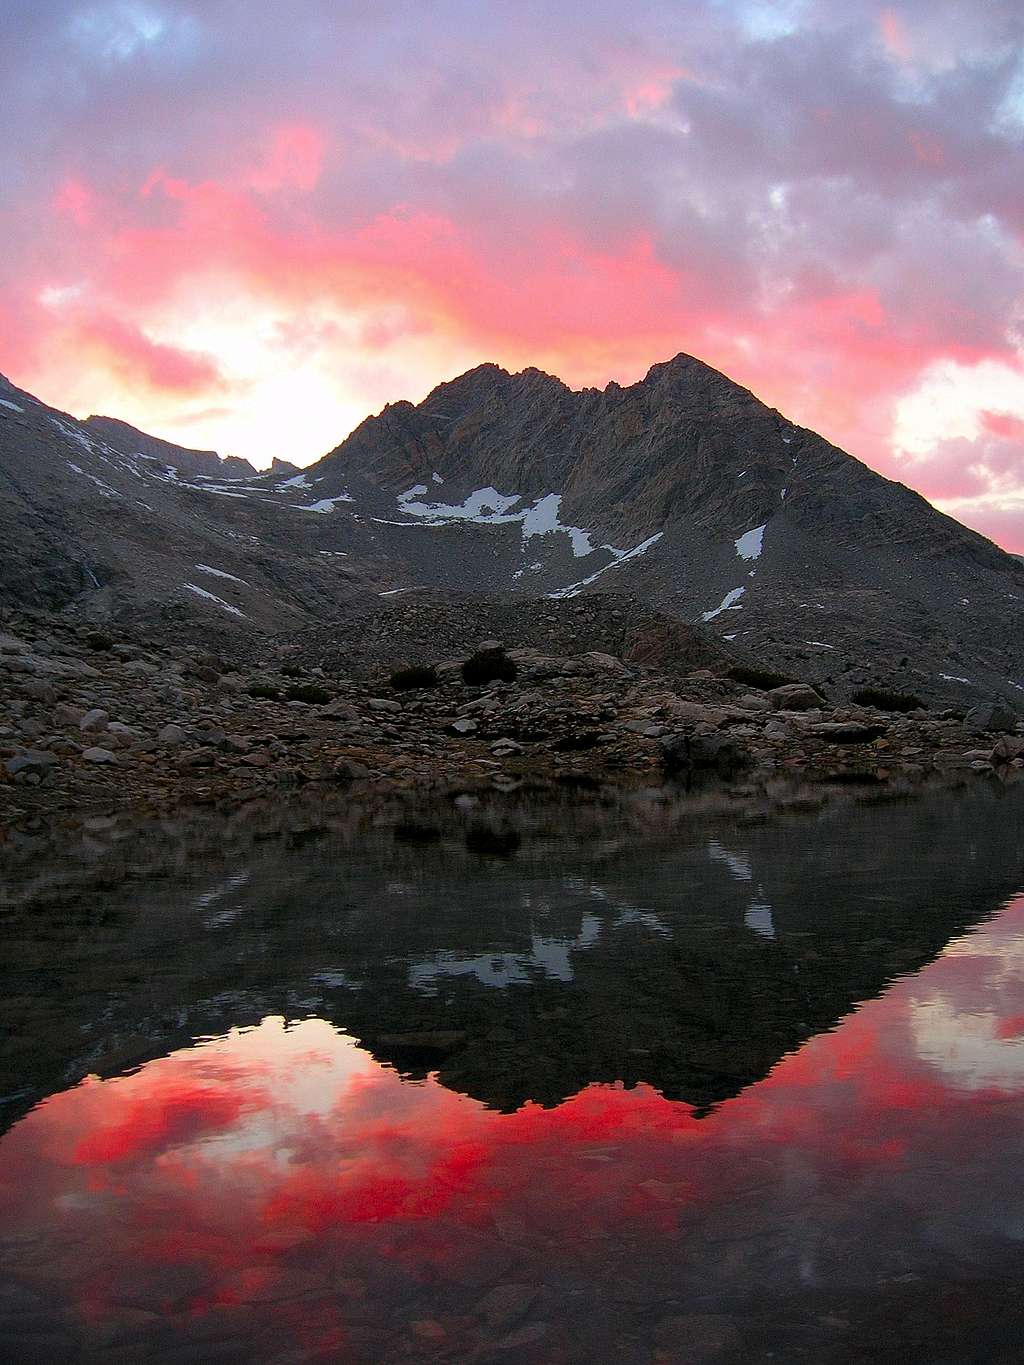 Sierra Sunset